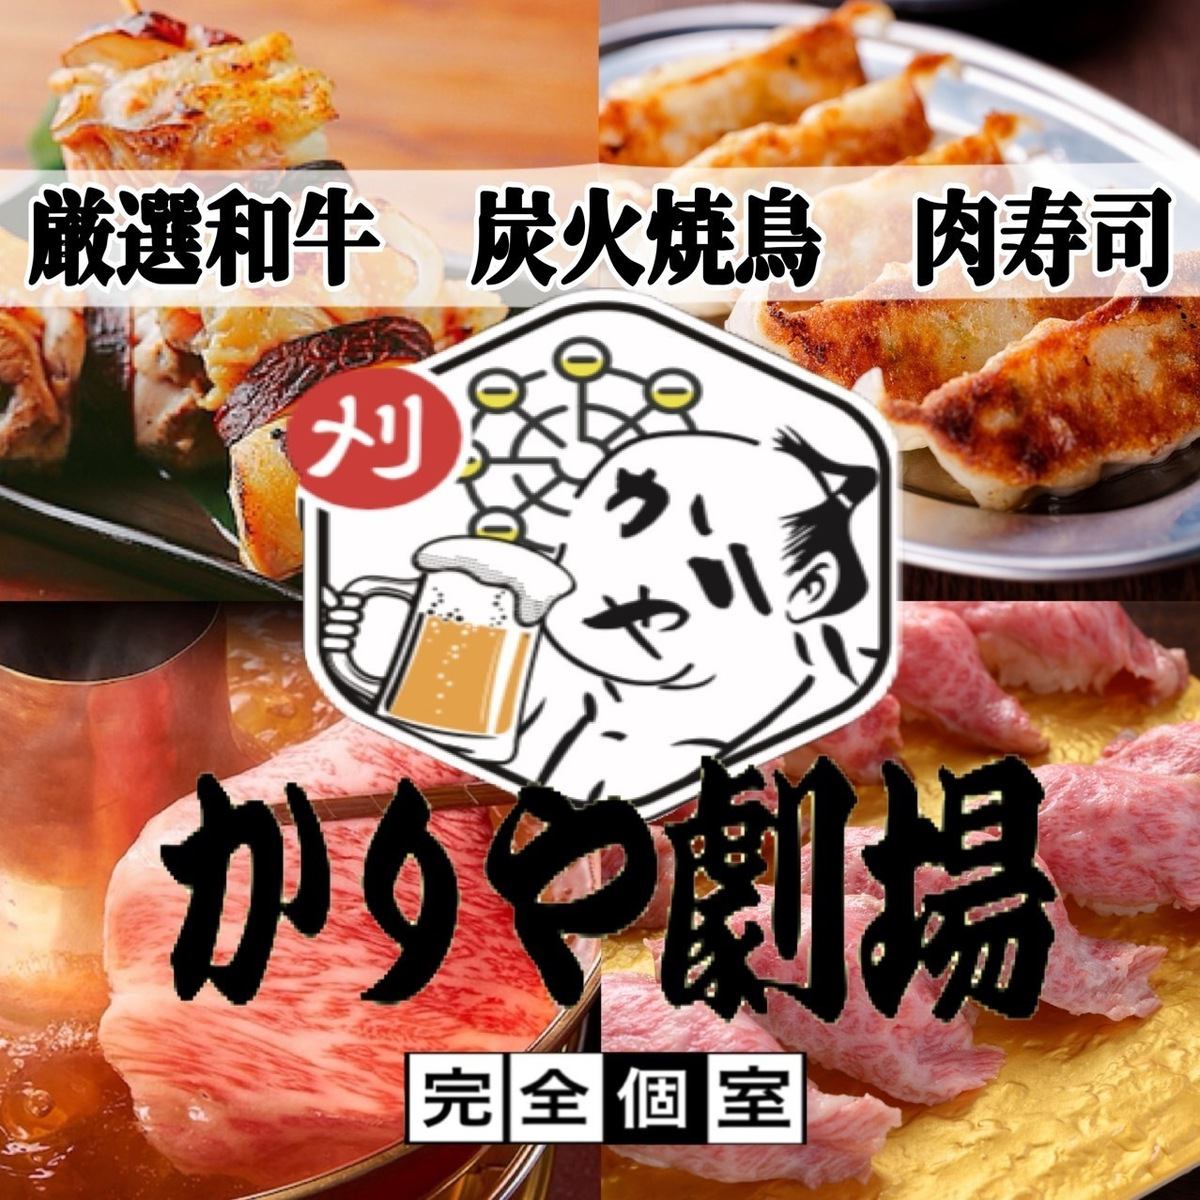 【샤브샤브 축제】샤브샤브+일식 요리 먹고 마시는 플랜 3000엔